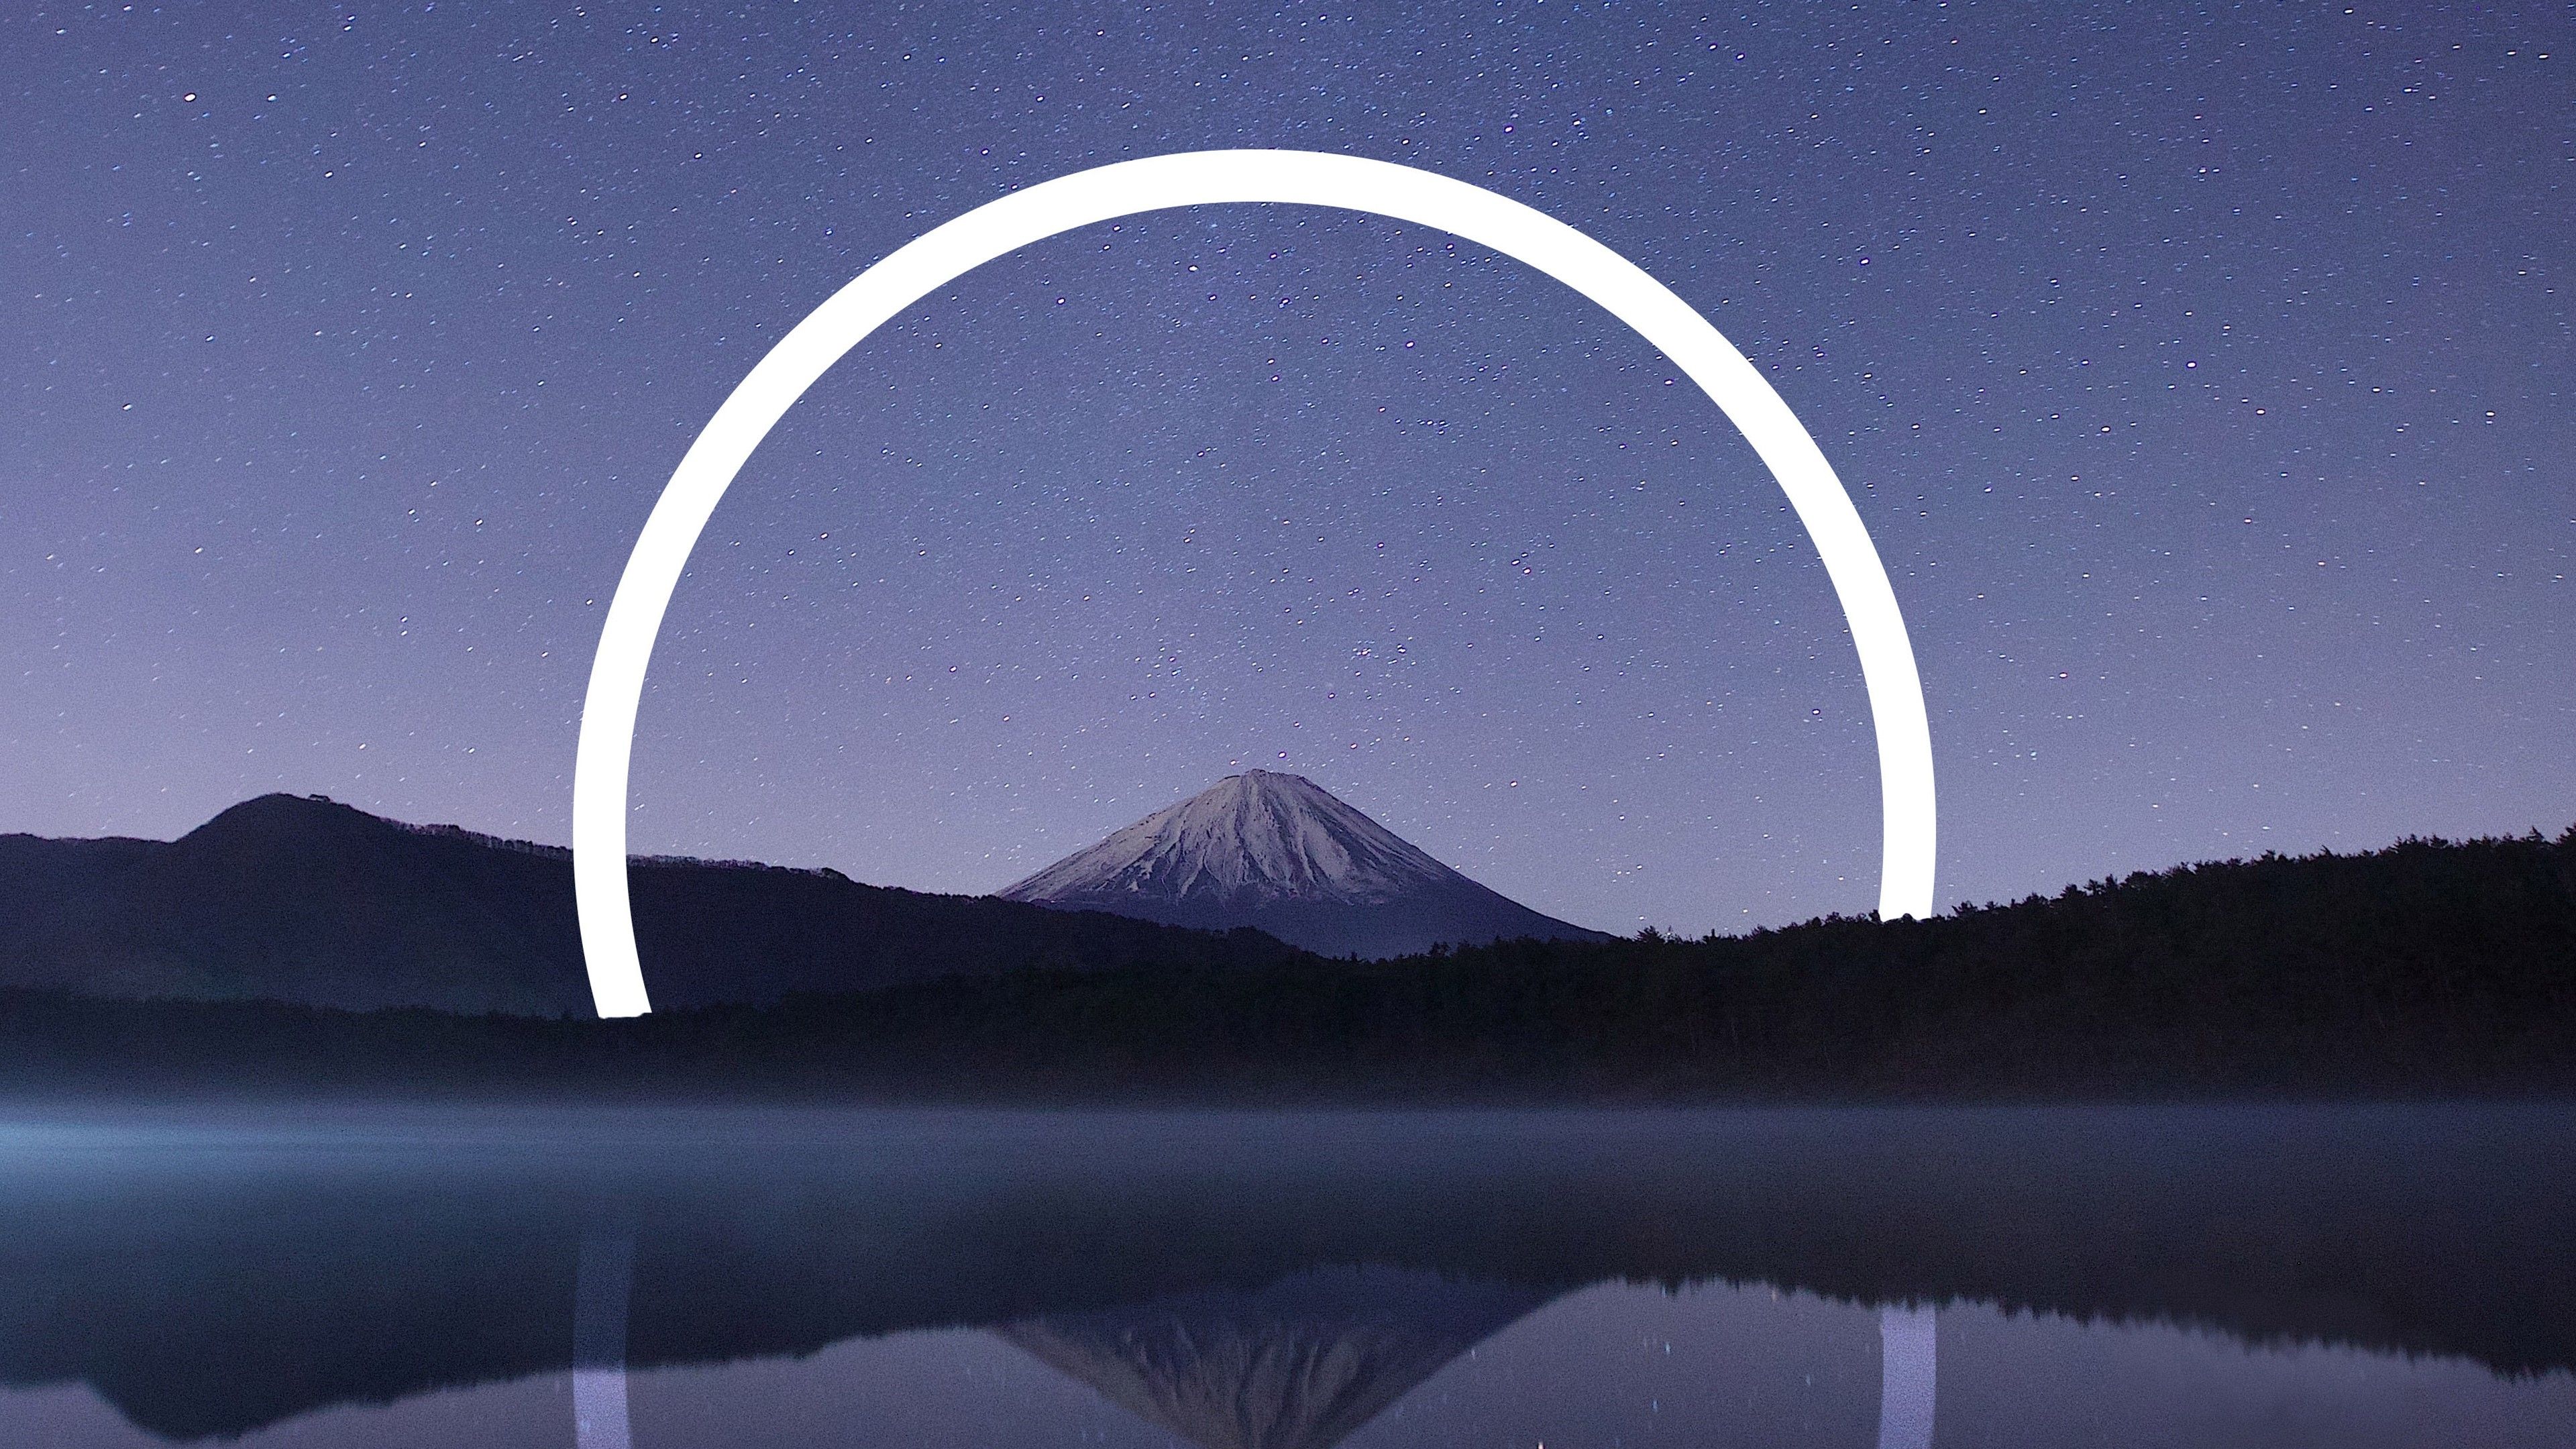 Mount Fuji Geometric Landscape 4K Wallpaper